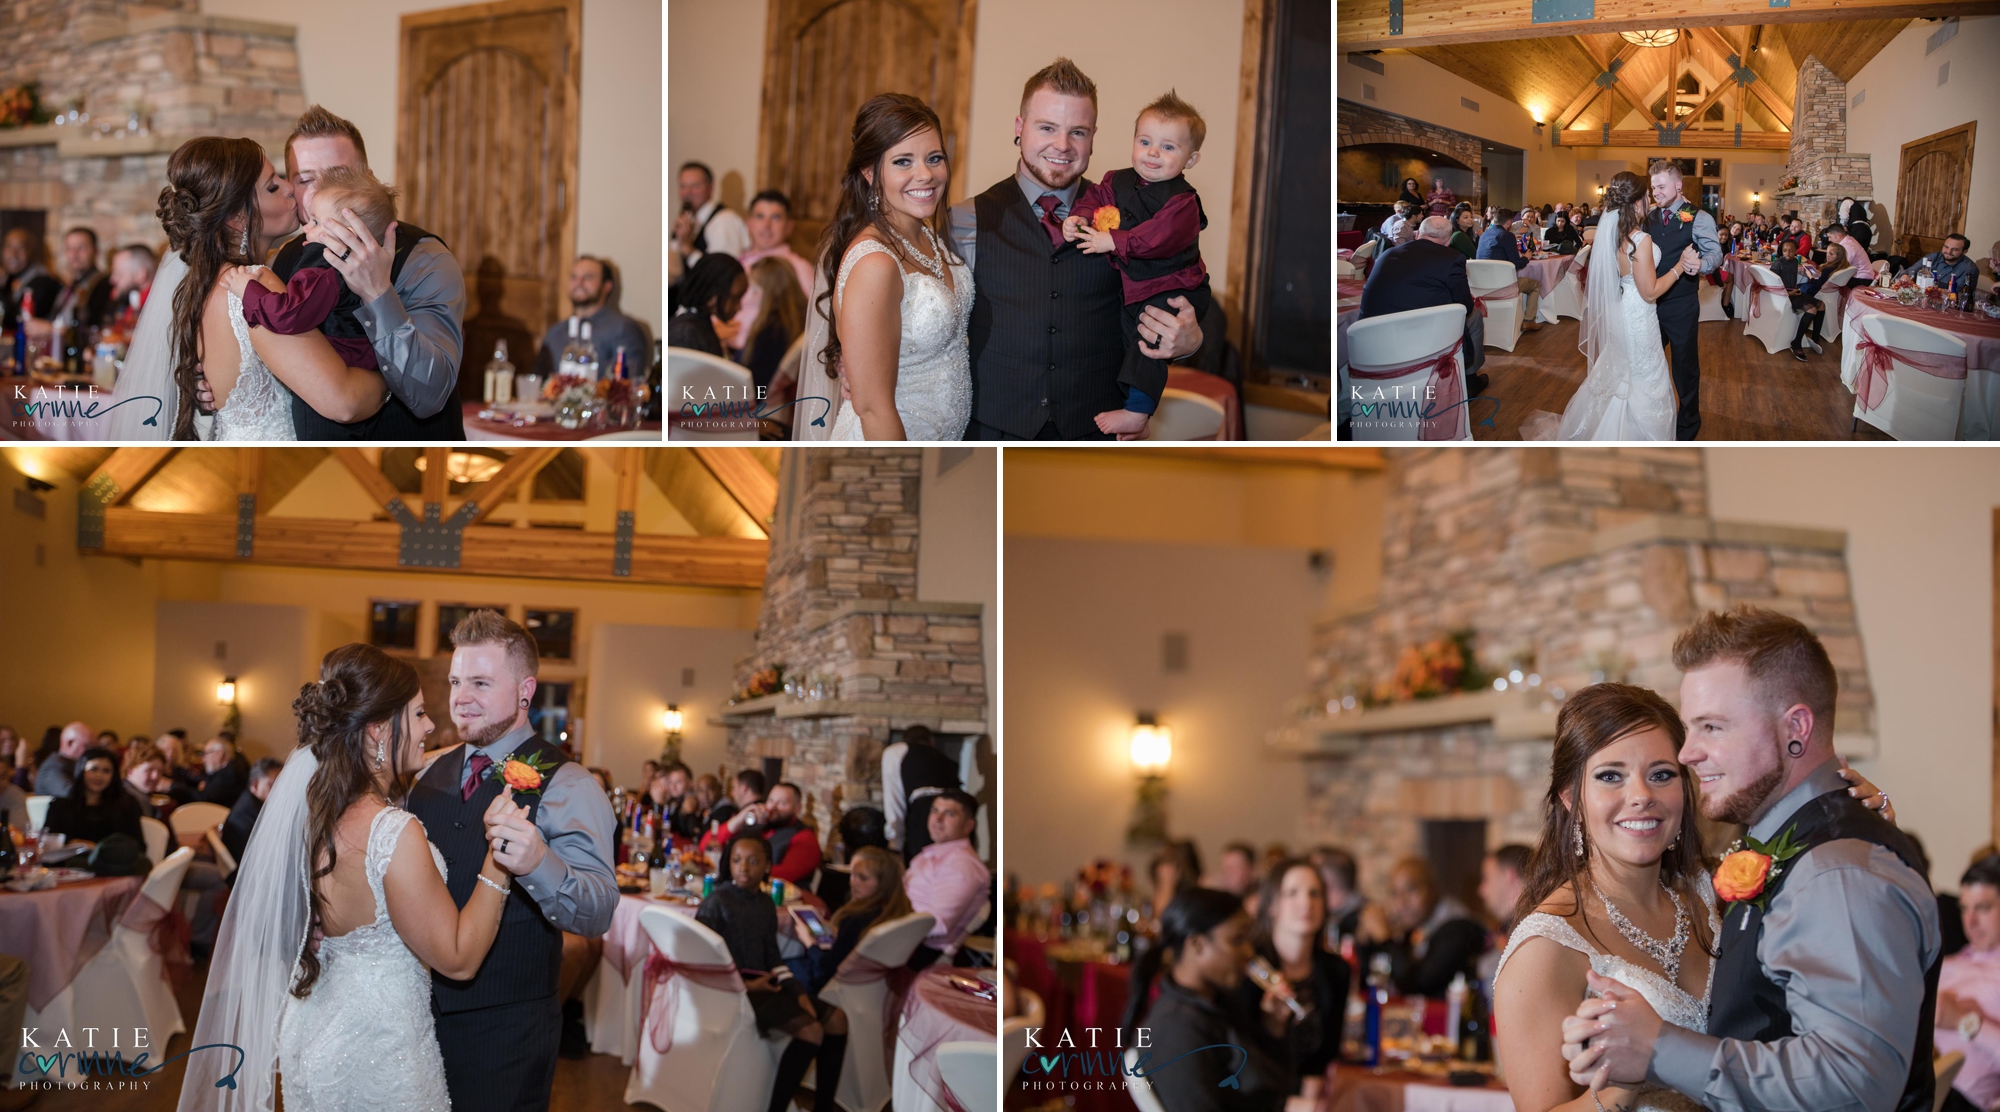 family oriented wedding in Colorado Springs